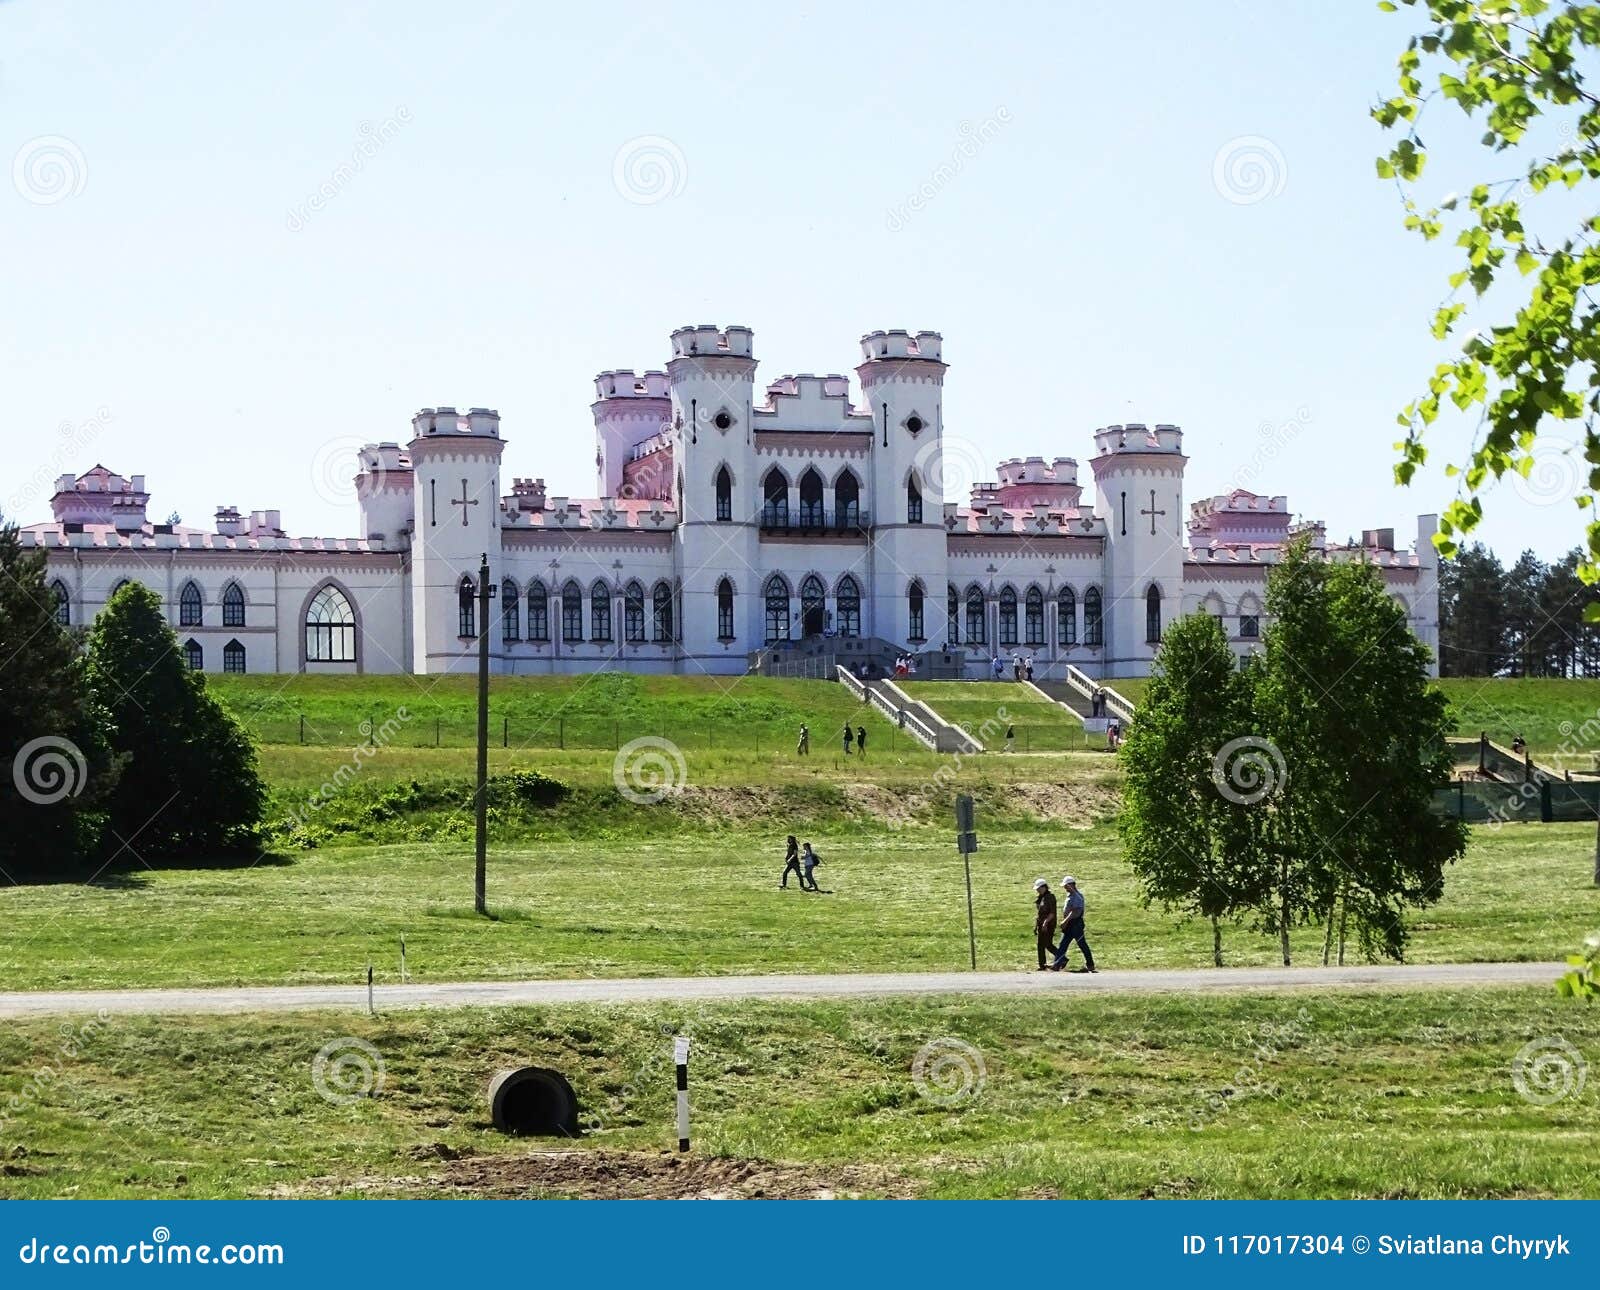 the puslovsky palace in kossovo belarus